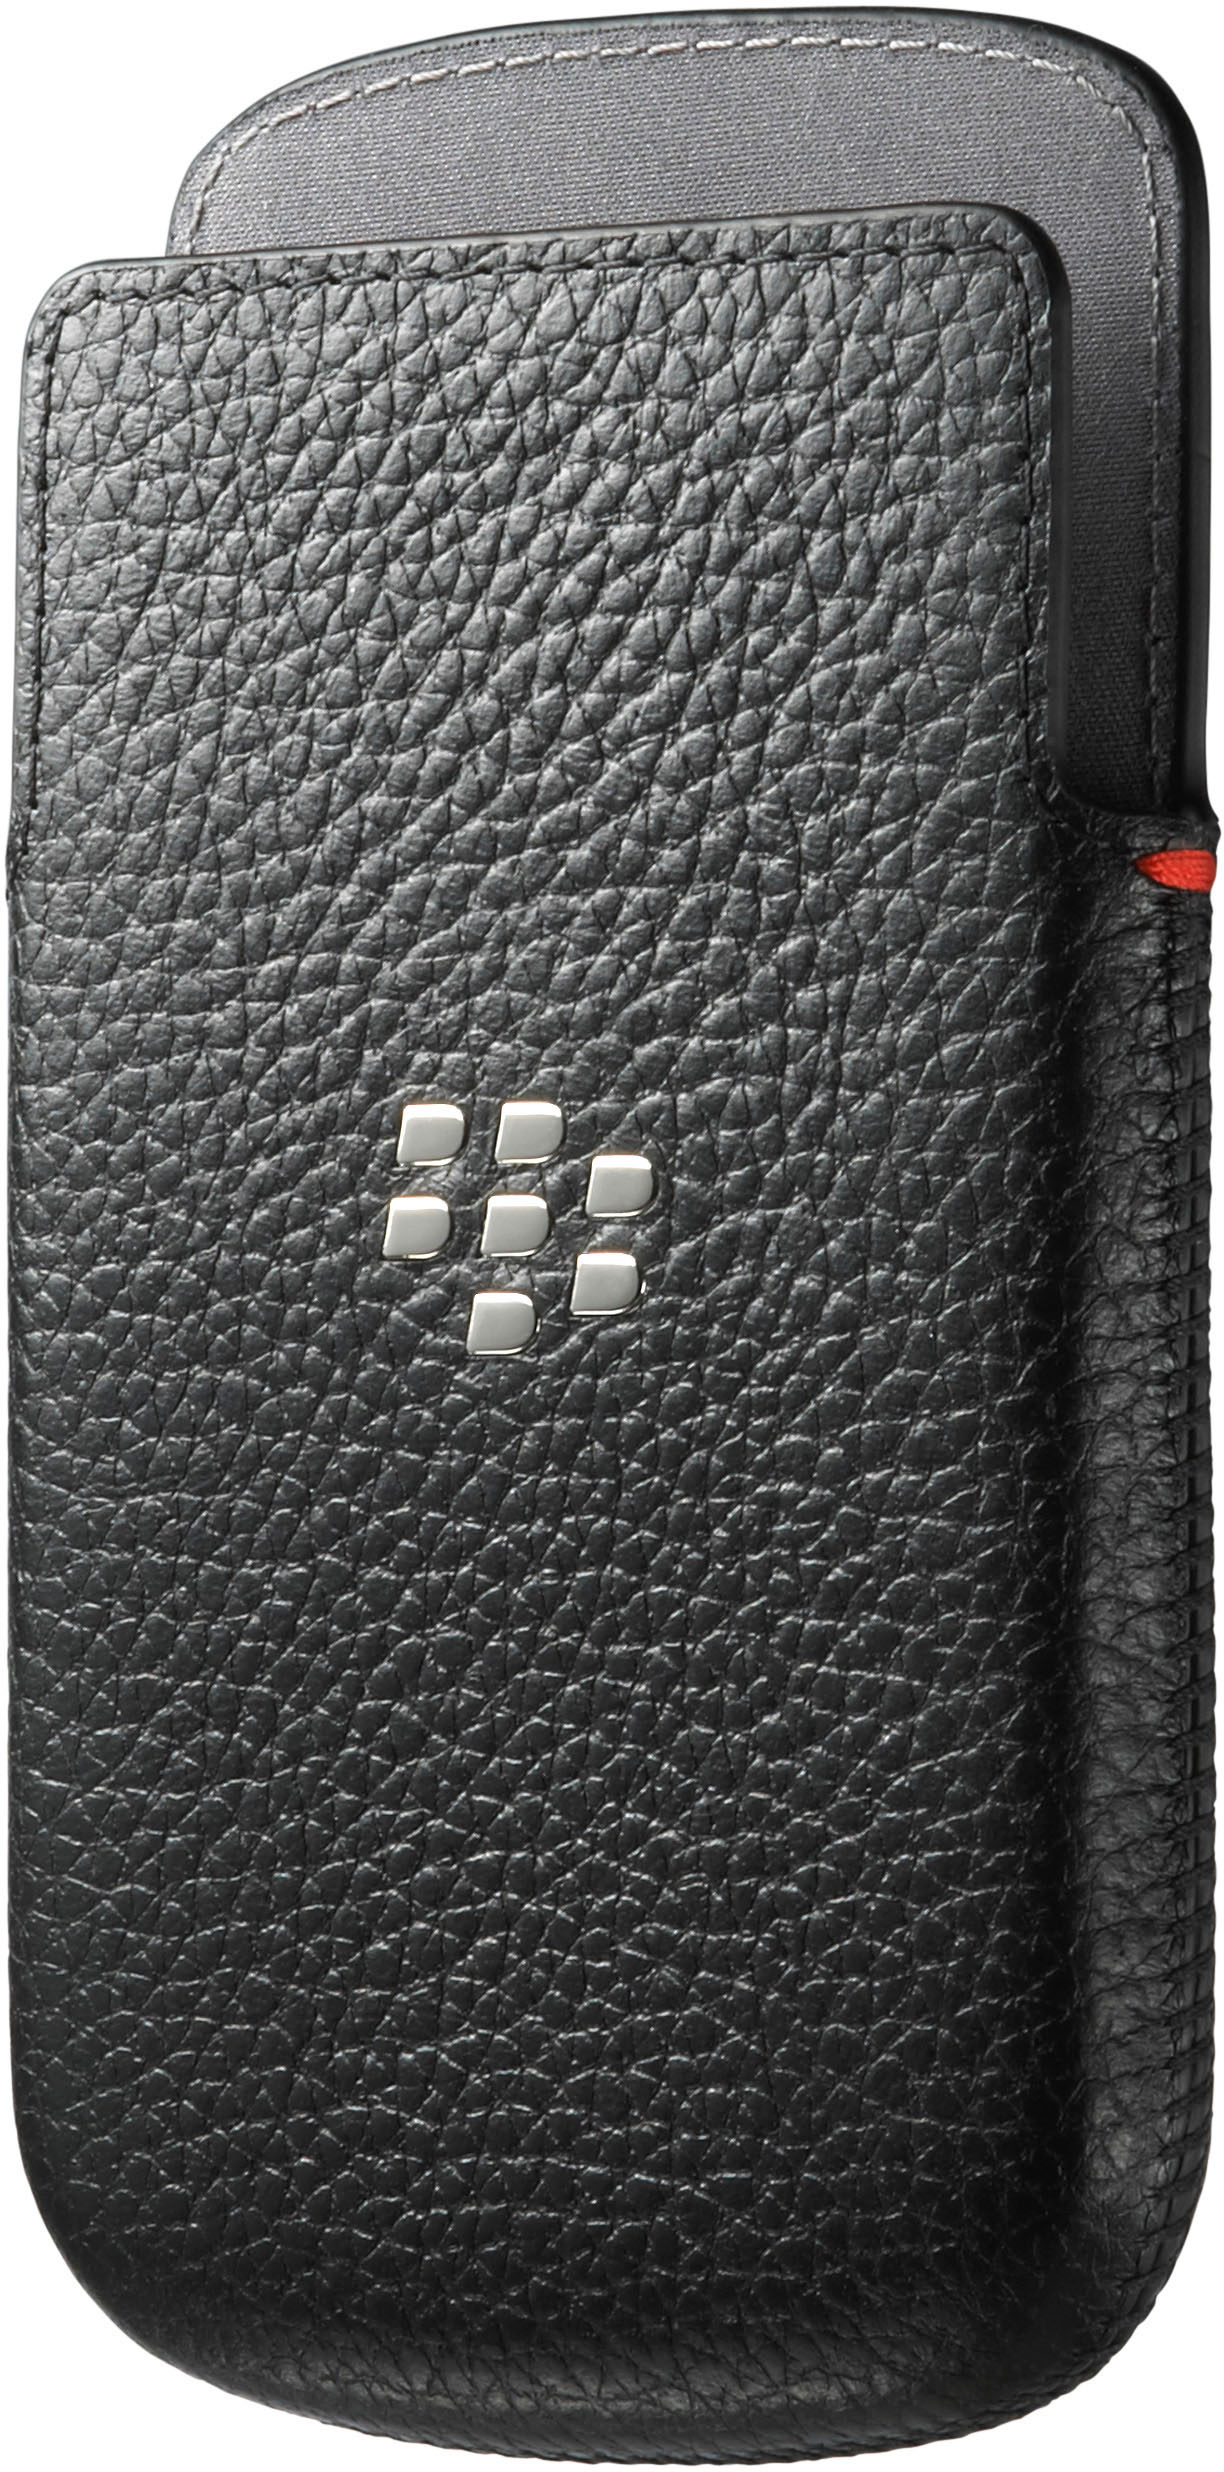 BLACKBERRY Ledertasche für Blackberry, Schwarz schwarz, Q10, Q10